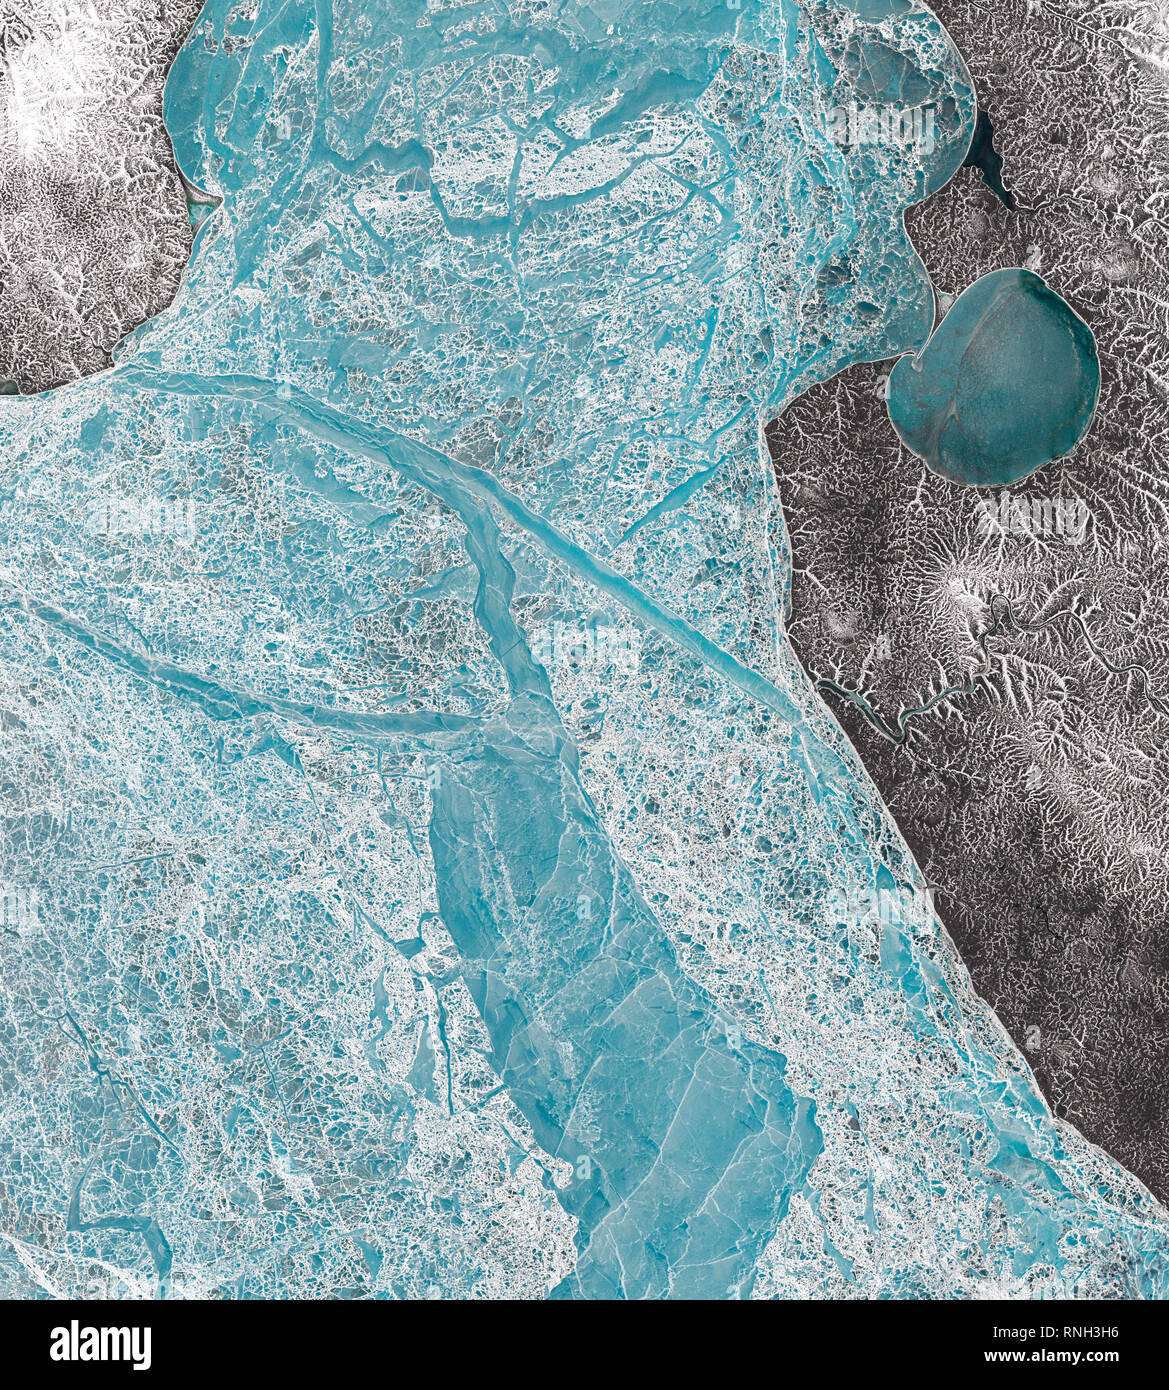 Luftaufnahme des gefrorenen Laptewsee westlich der Insel Kotelny, Arktischen Ozean Stockfoto